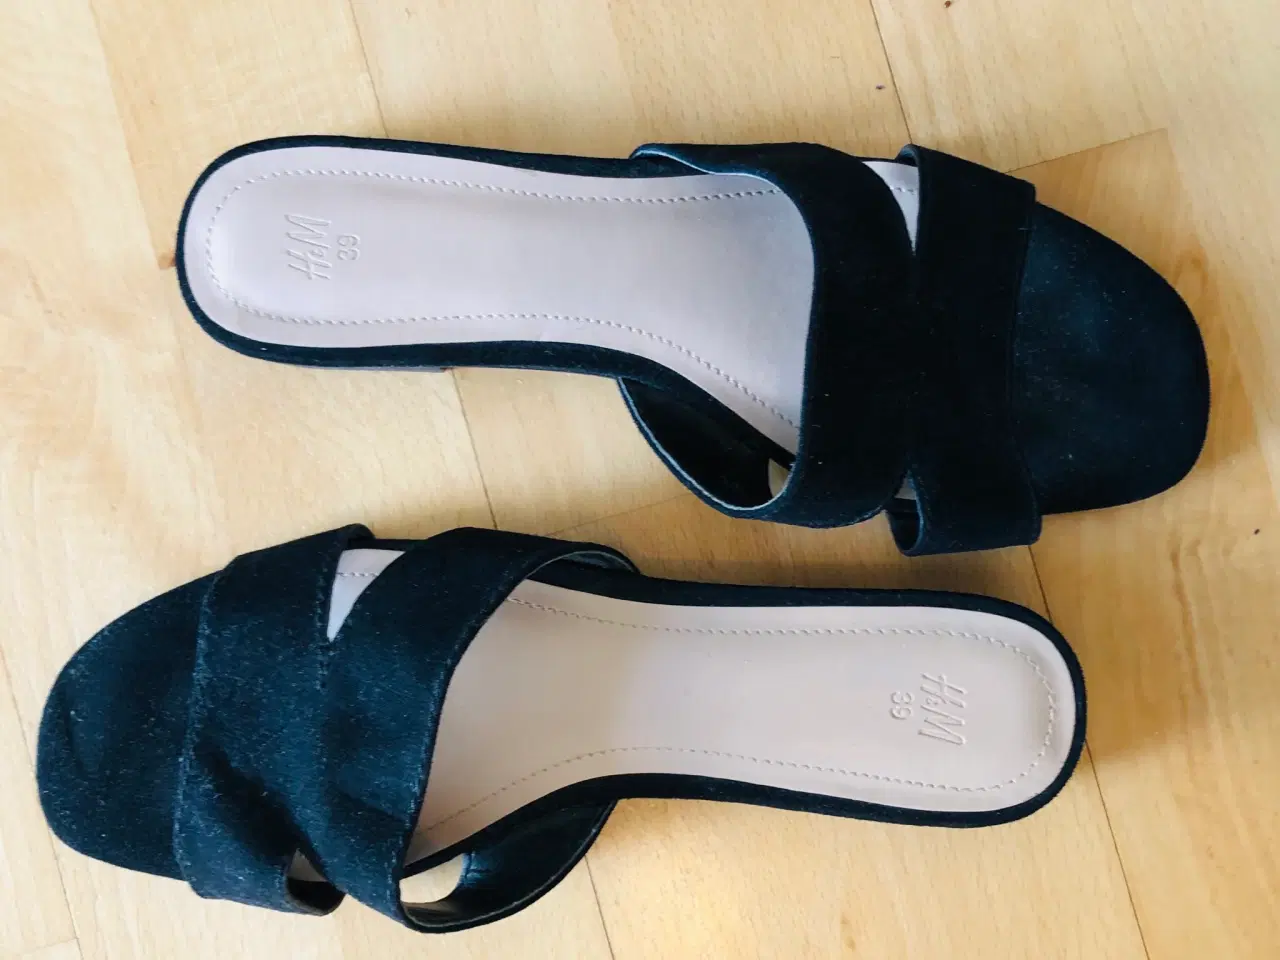 Billede 1 - H&M sandaler